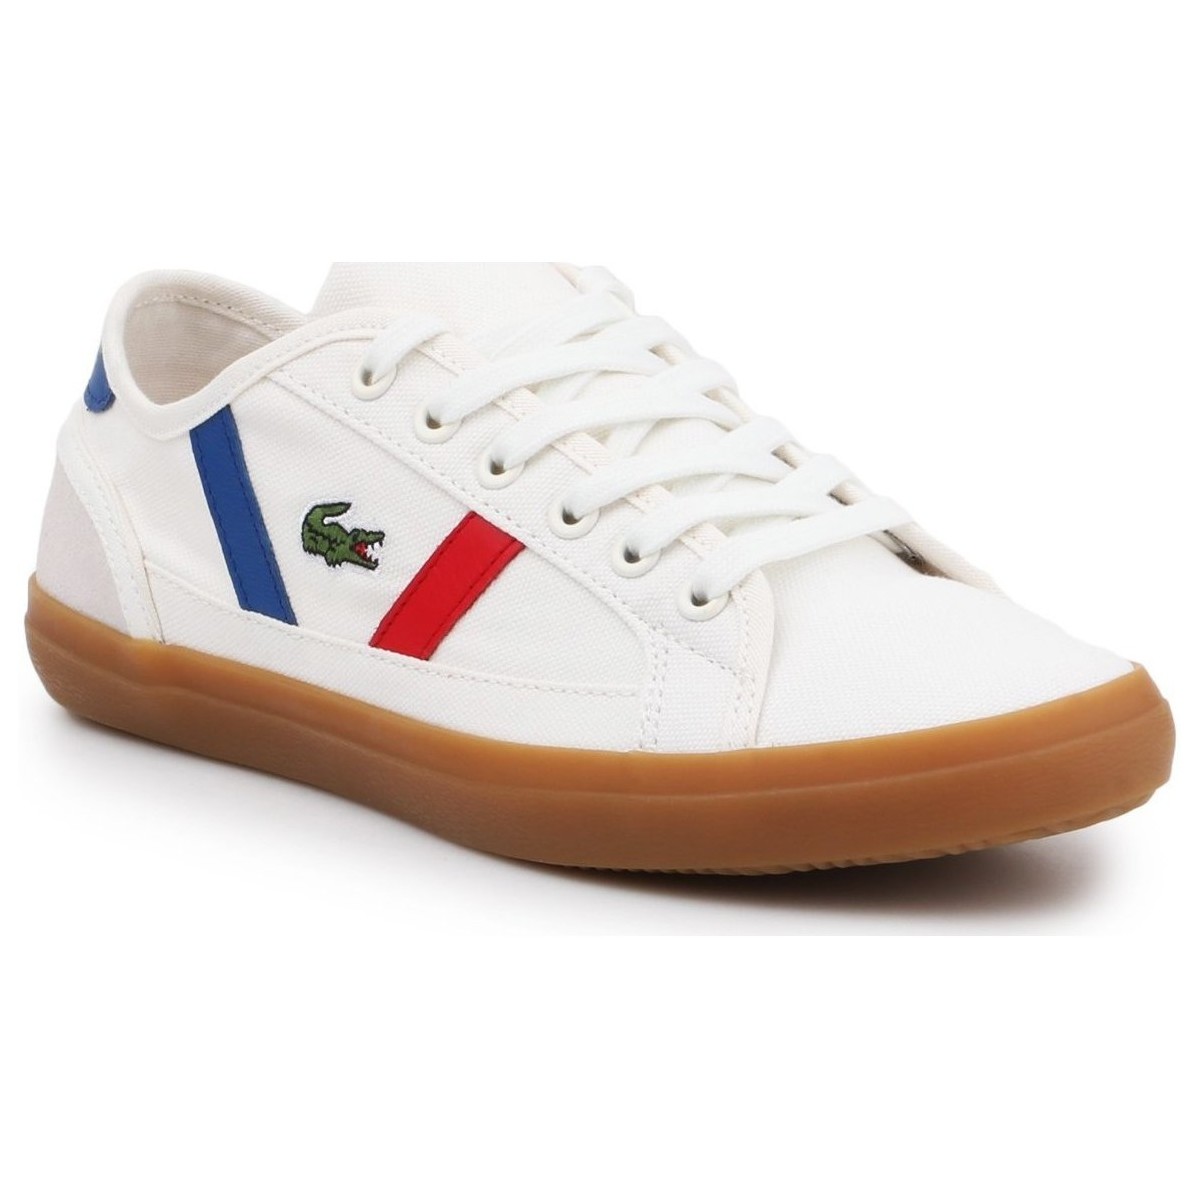 Παπούτσια Γυναίκα Χαμηλά Sneakers Lacoste 7-37CFA006740F Multicolour